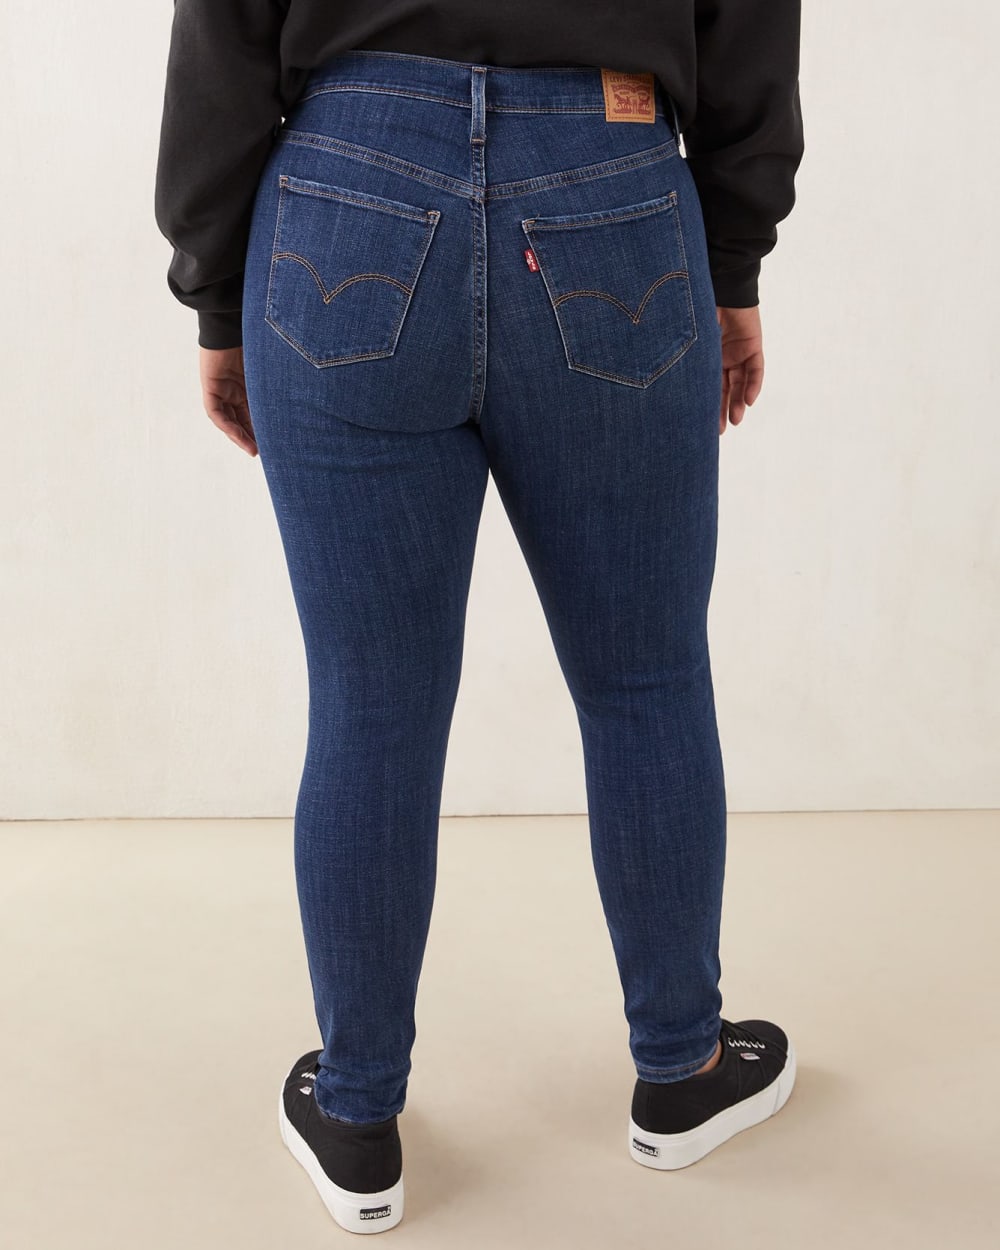 721 High-Rise Skinny Jeans, Distressed Lapis Finish - Levi's | Penningtons